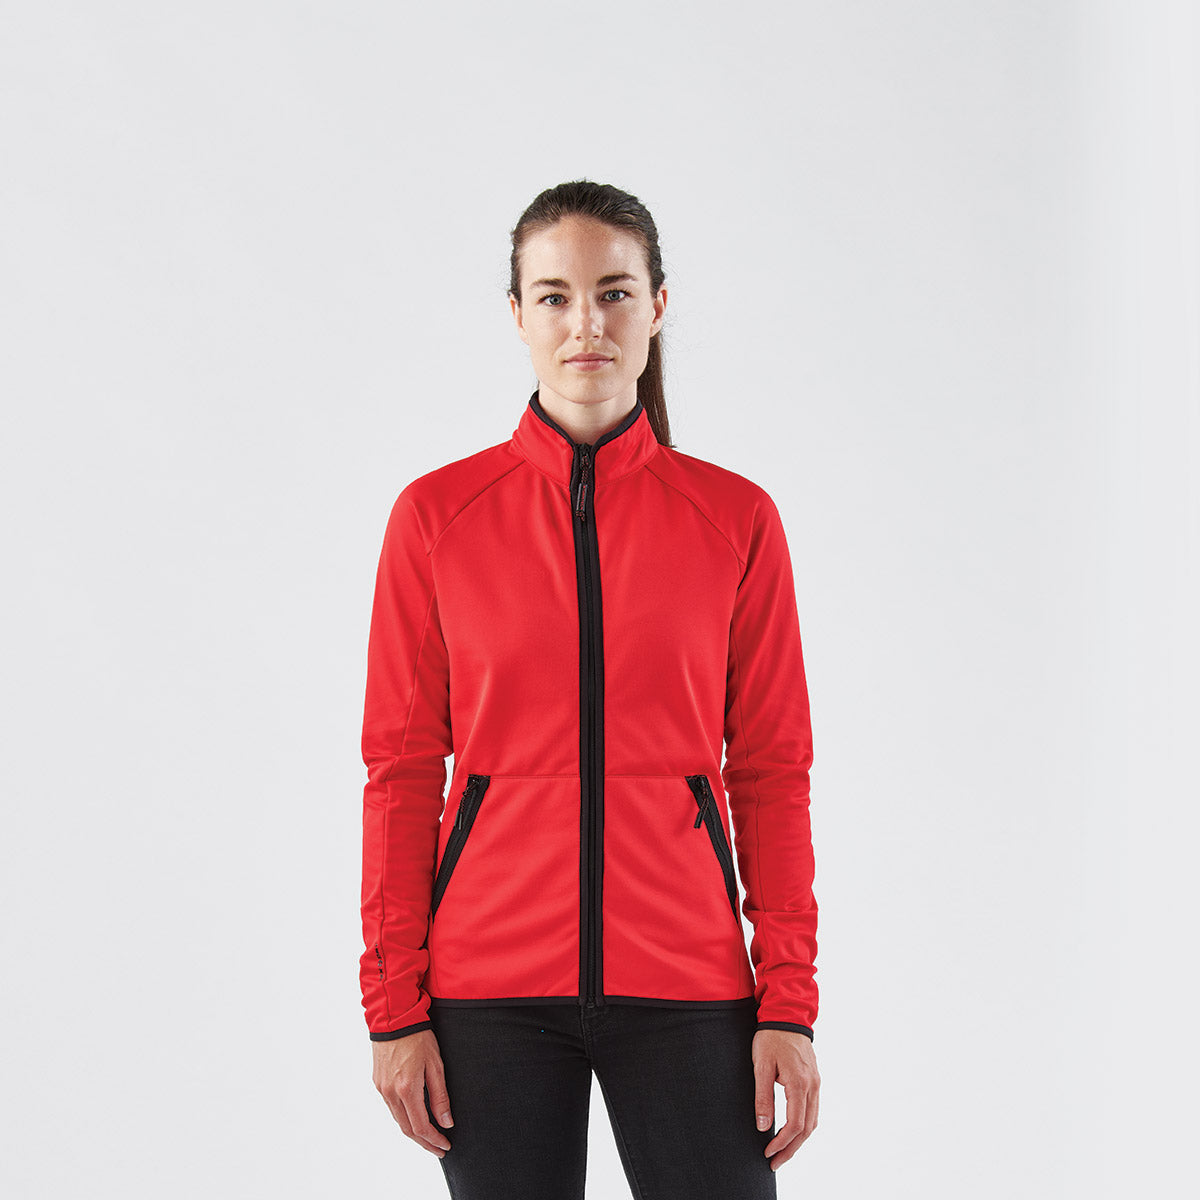 Women's Bergen Sherpa Fleece Jacket - DLX-1W